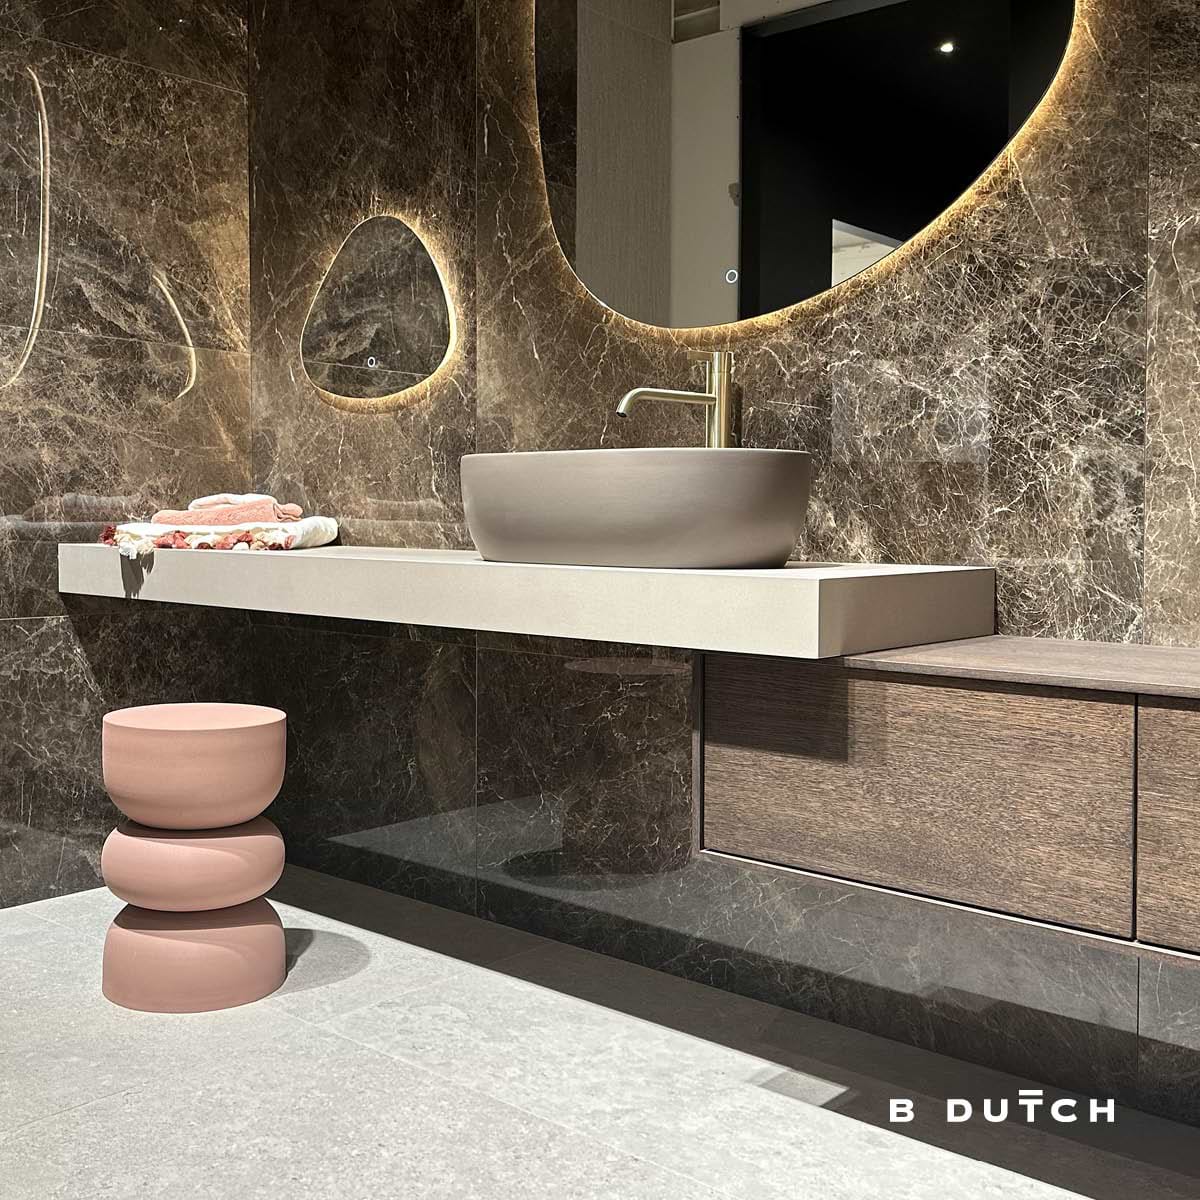 B Dutch designer Anne Geris geeft 5 tips voor het realiseren van een hotelchique badkamer. Het kiezen van de juiste materialen is daar eentje van.